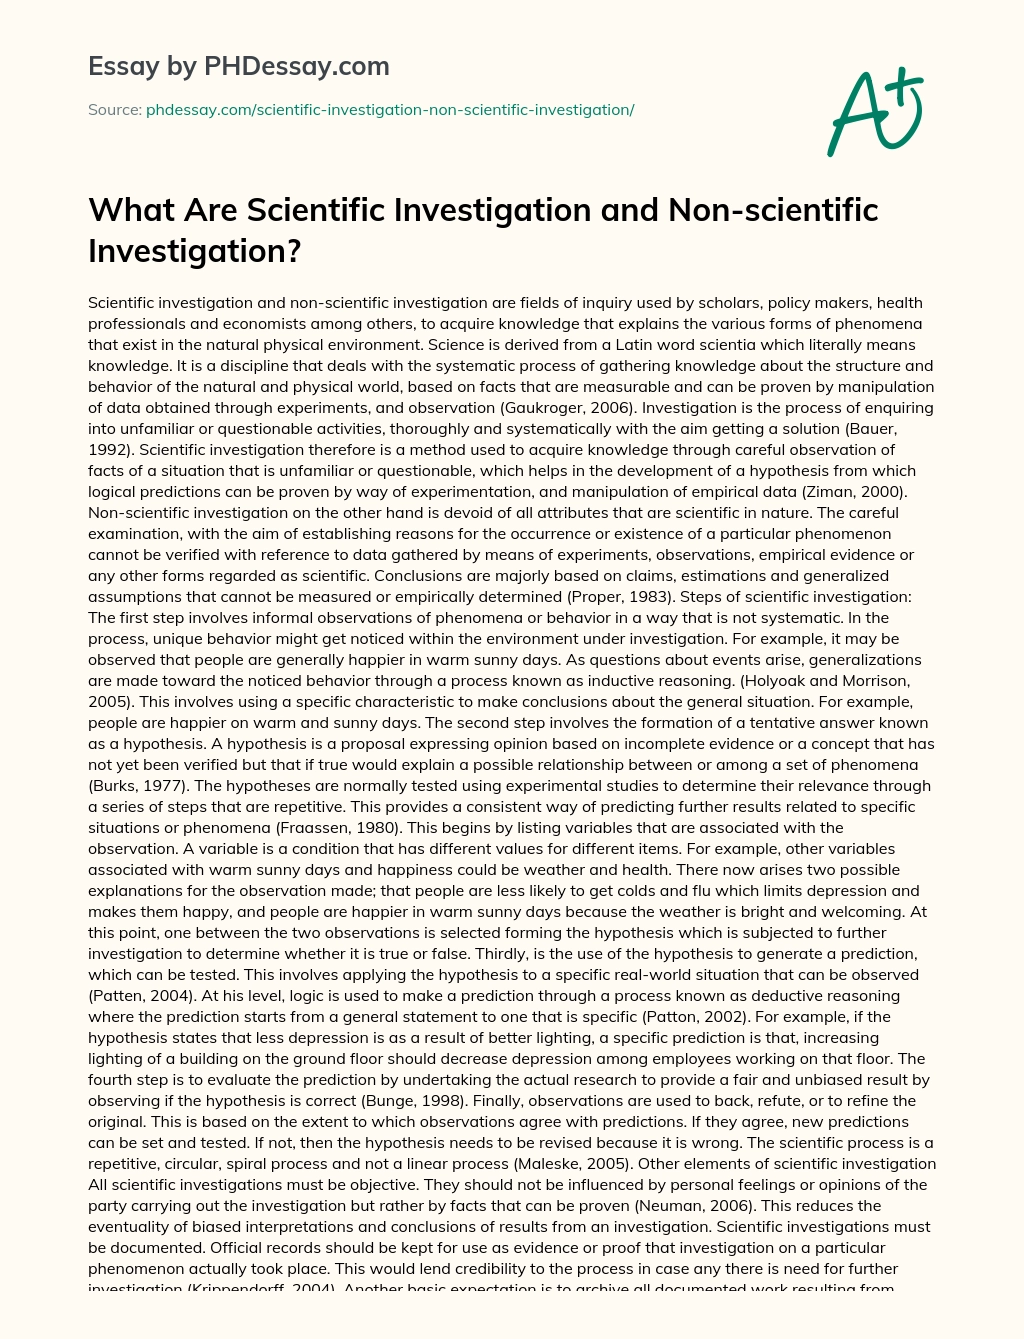 What Are Scientific Investigation and Non-scientific Investigation? essay